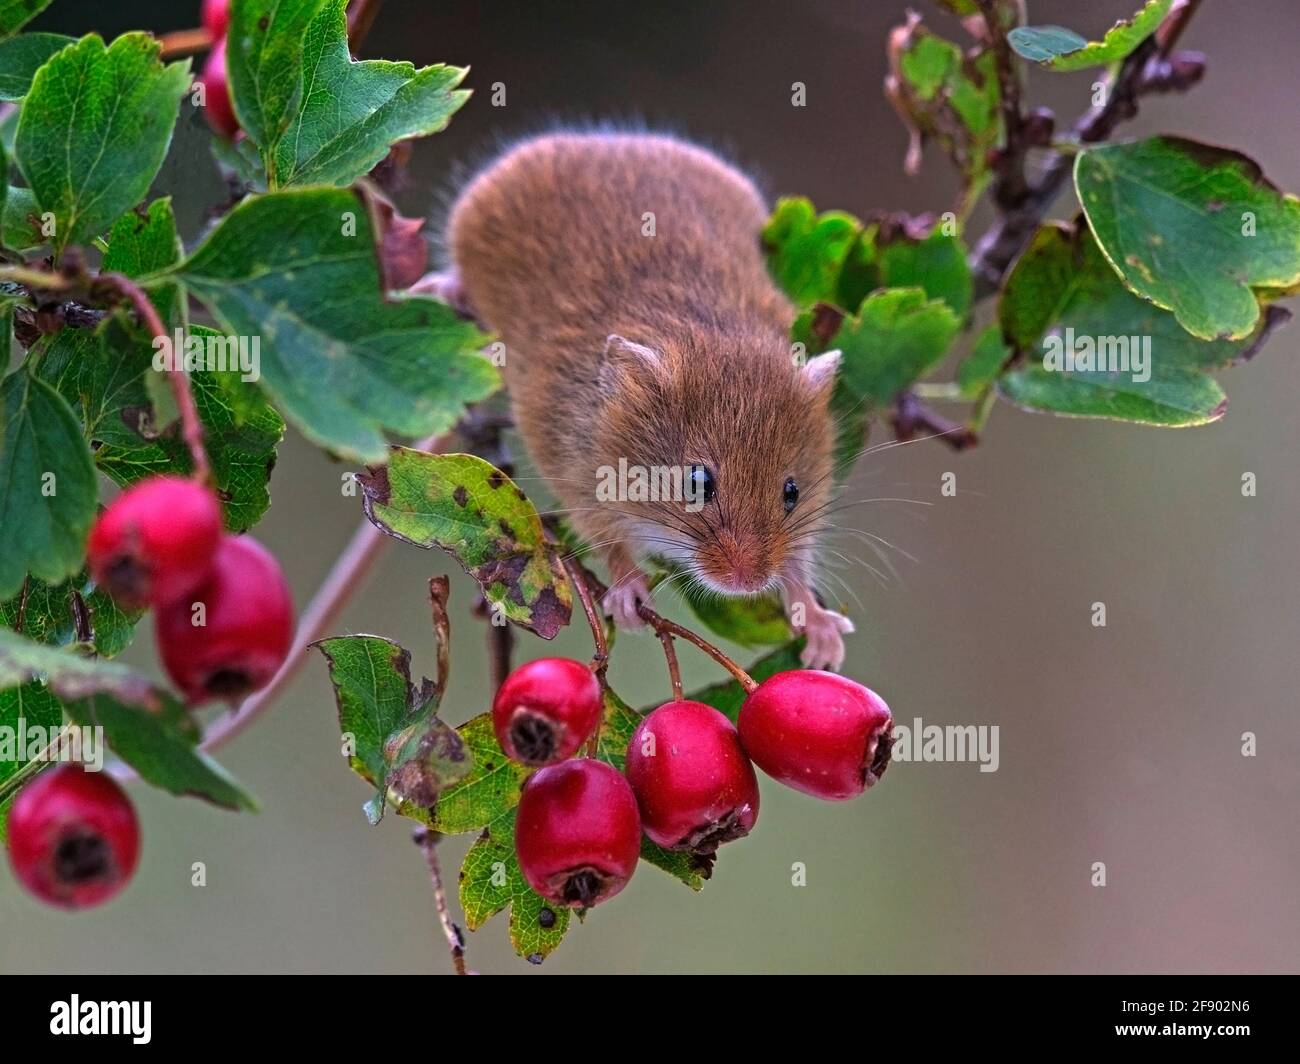 Eurasian harvest mouse on hawthorn berries Stock Photo